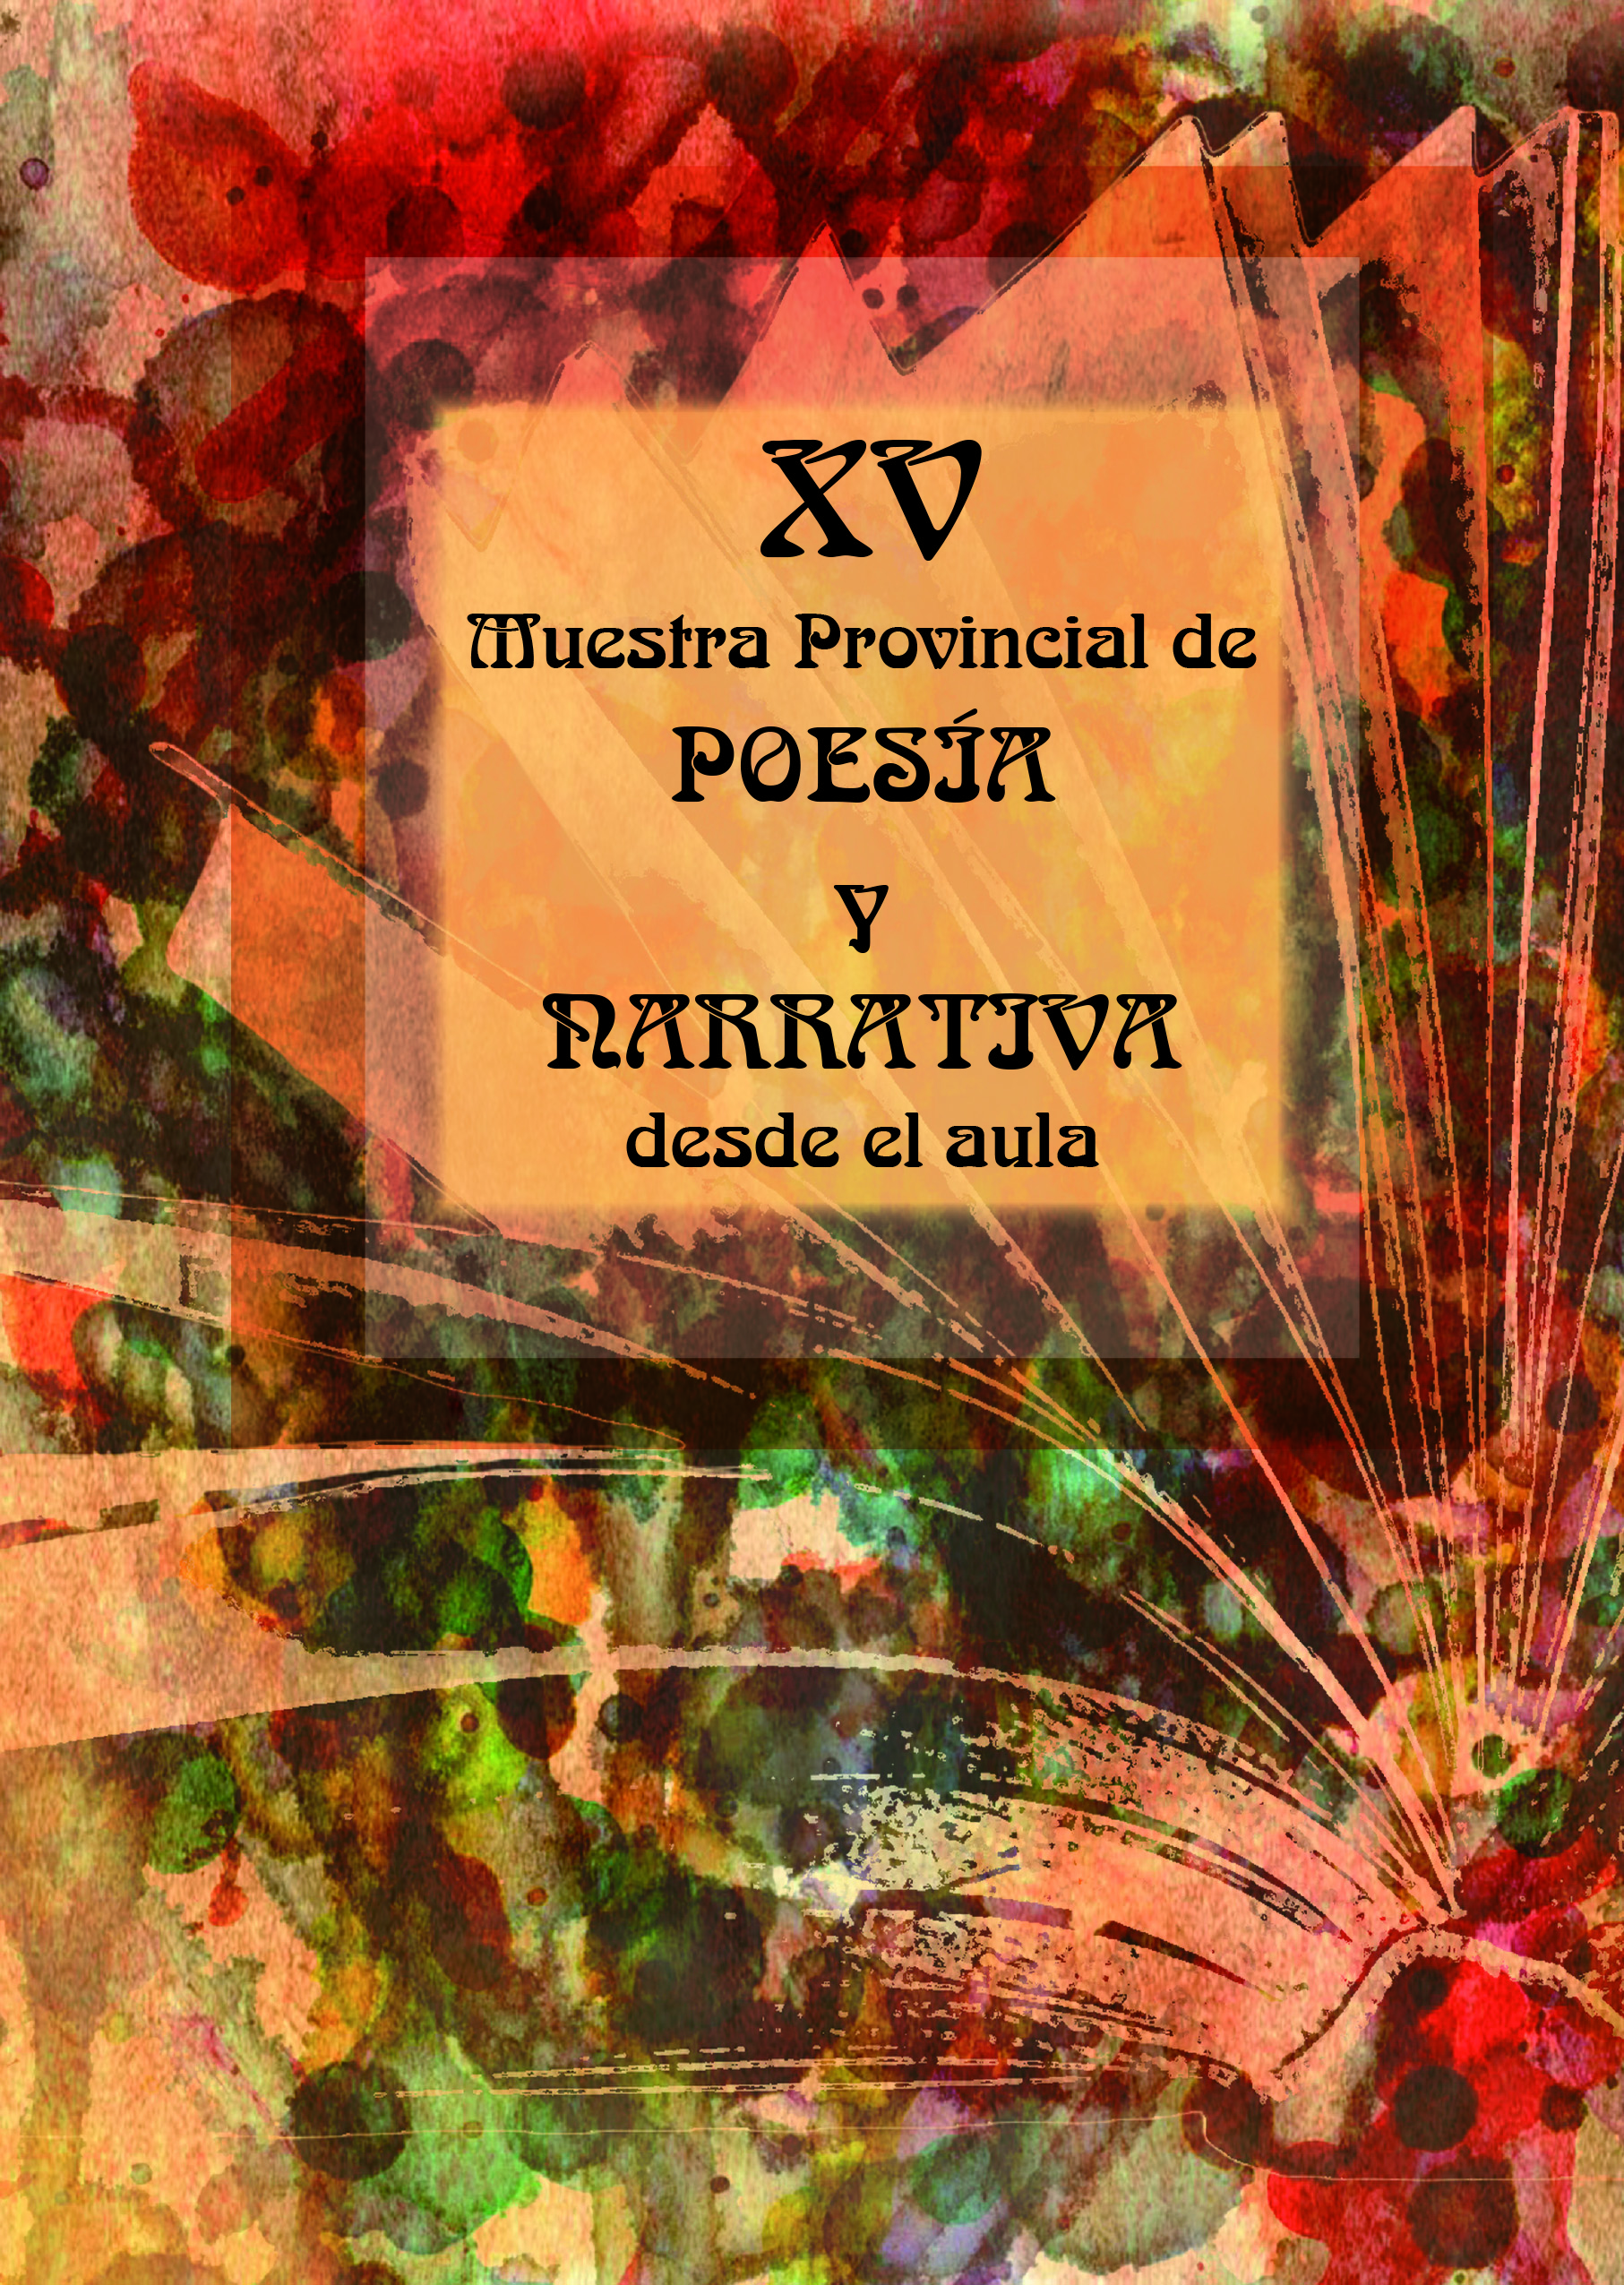 XV Muestra Provincial de poesía y narrativa.jpg